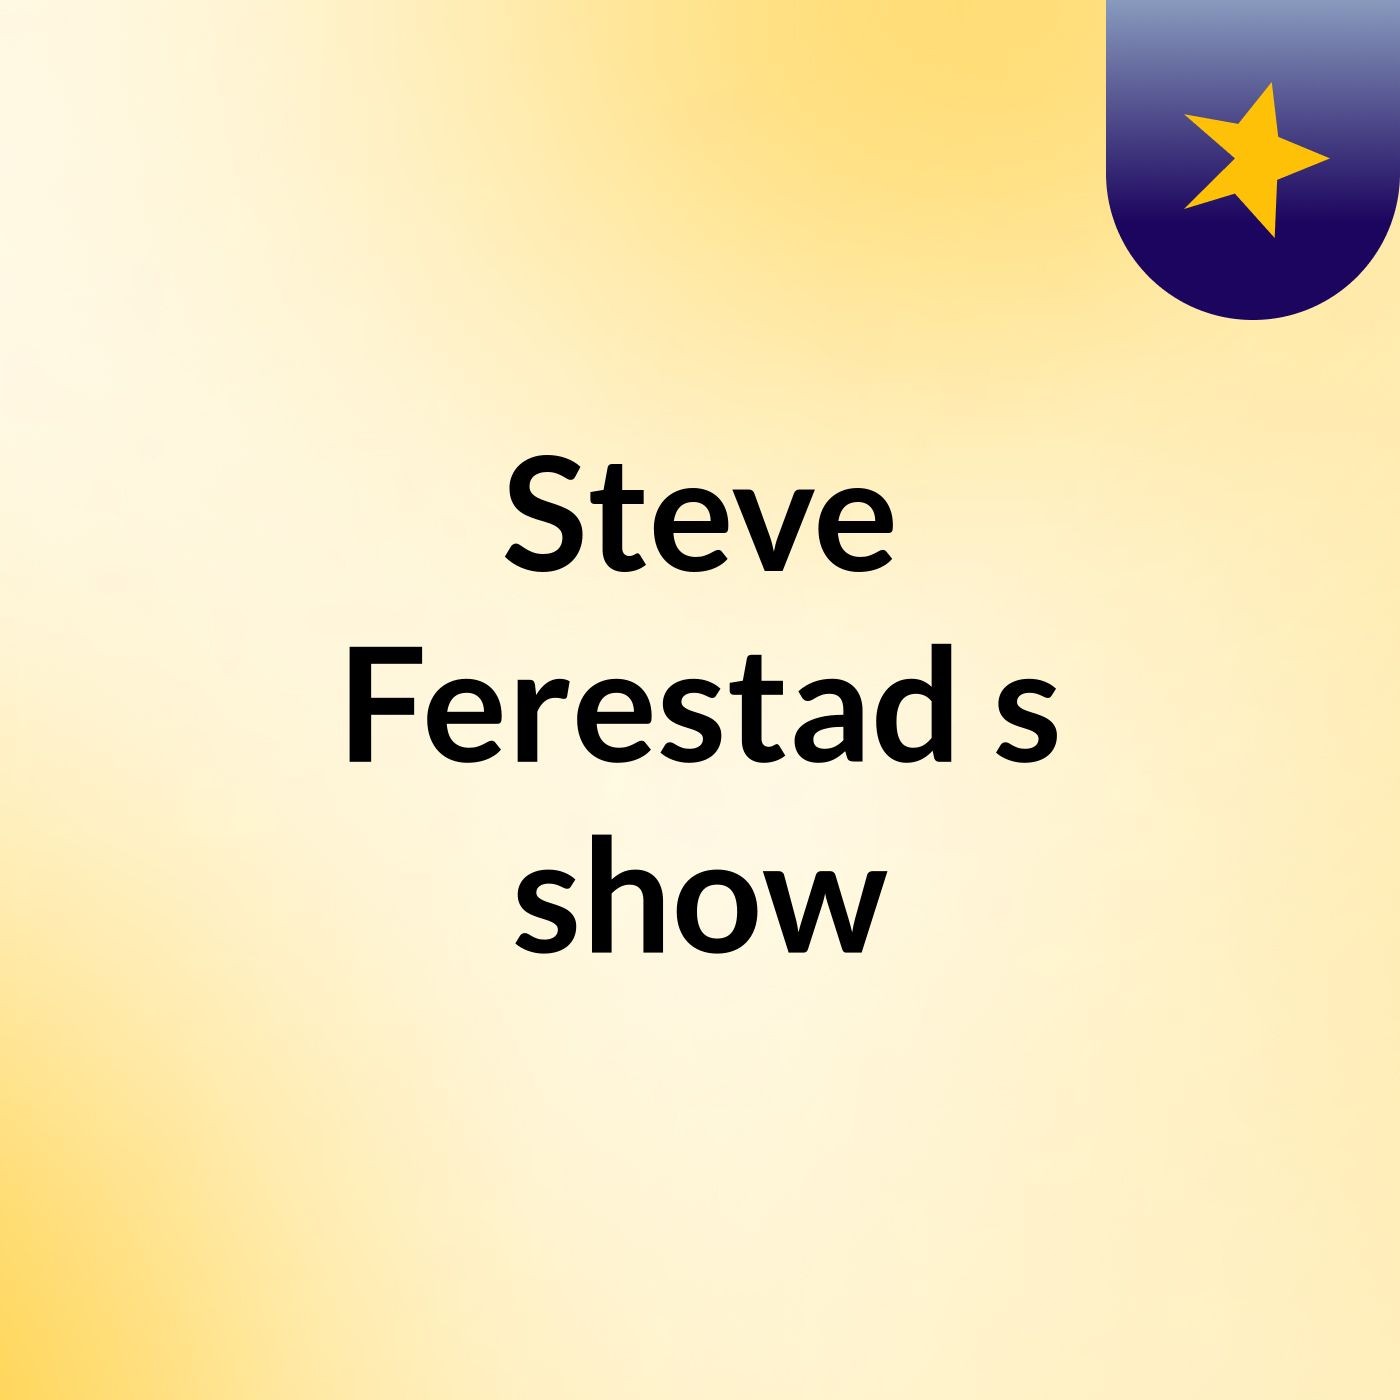 Steve Ferestad's show